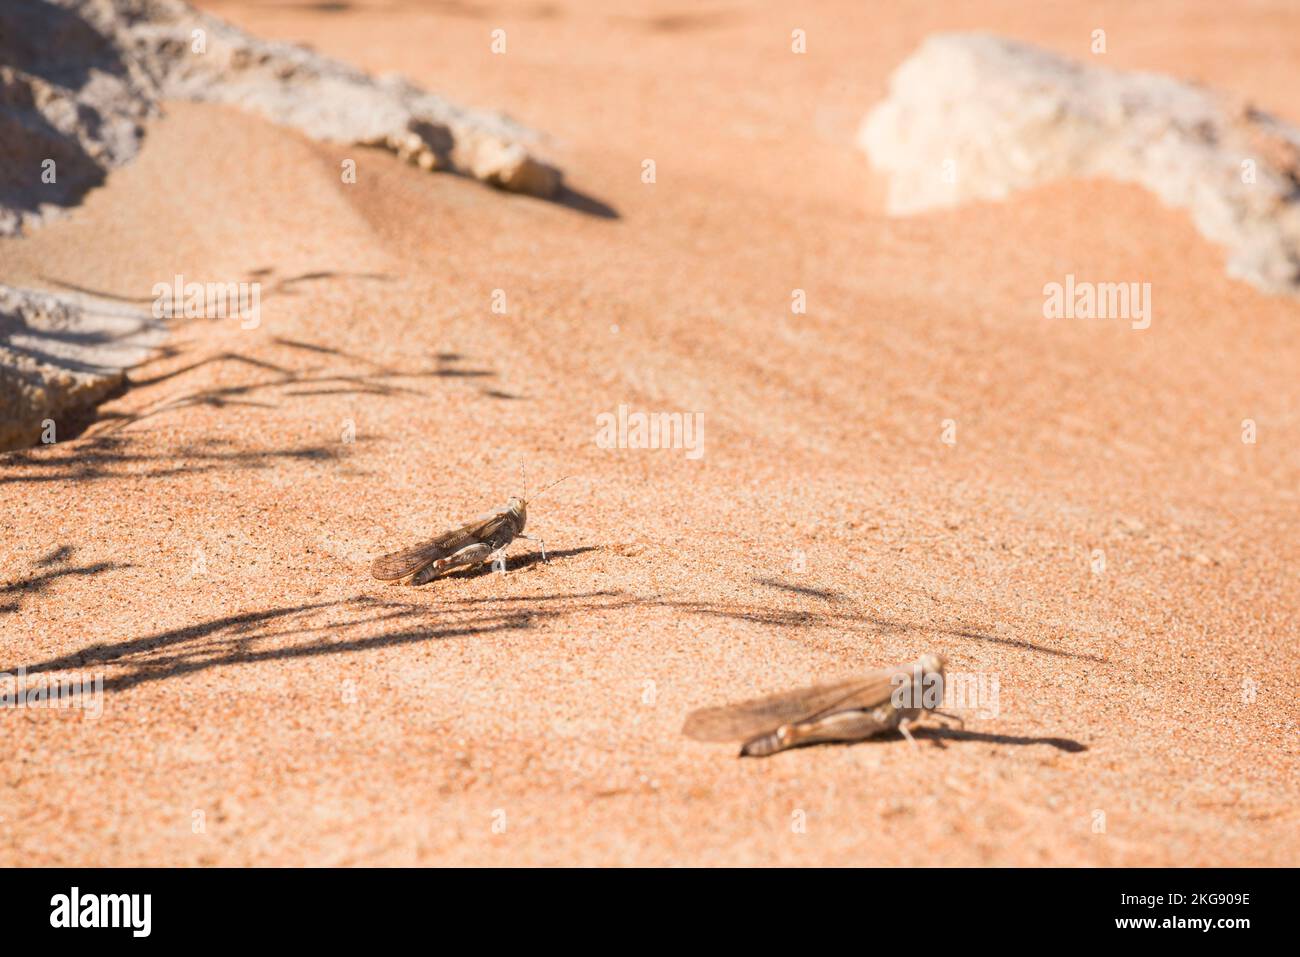 Cavallette nel deserto nel deserto degli Emirati Arabi Uniti, Medio Oriente, osservazione della fauna selvatica Foto Stock